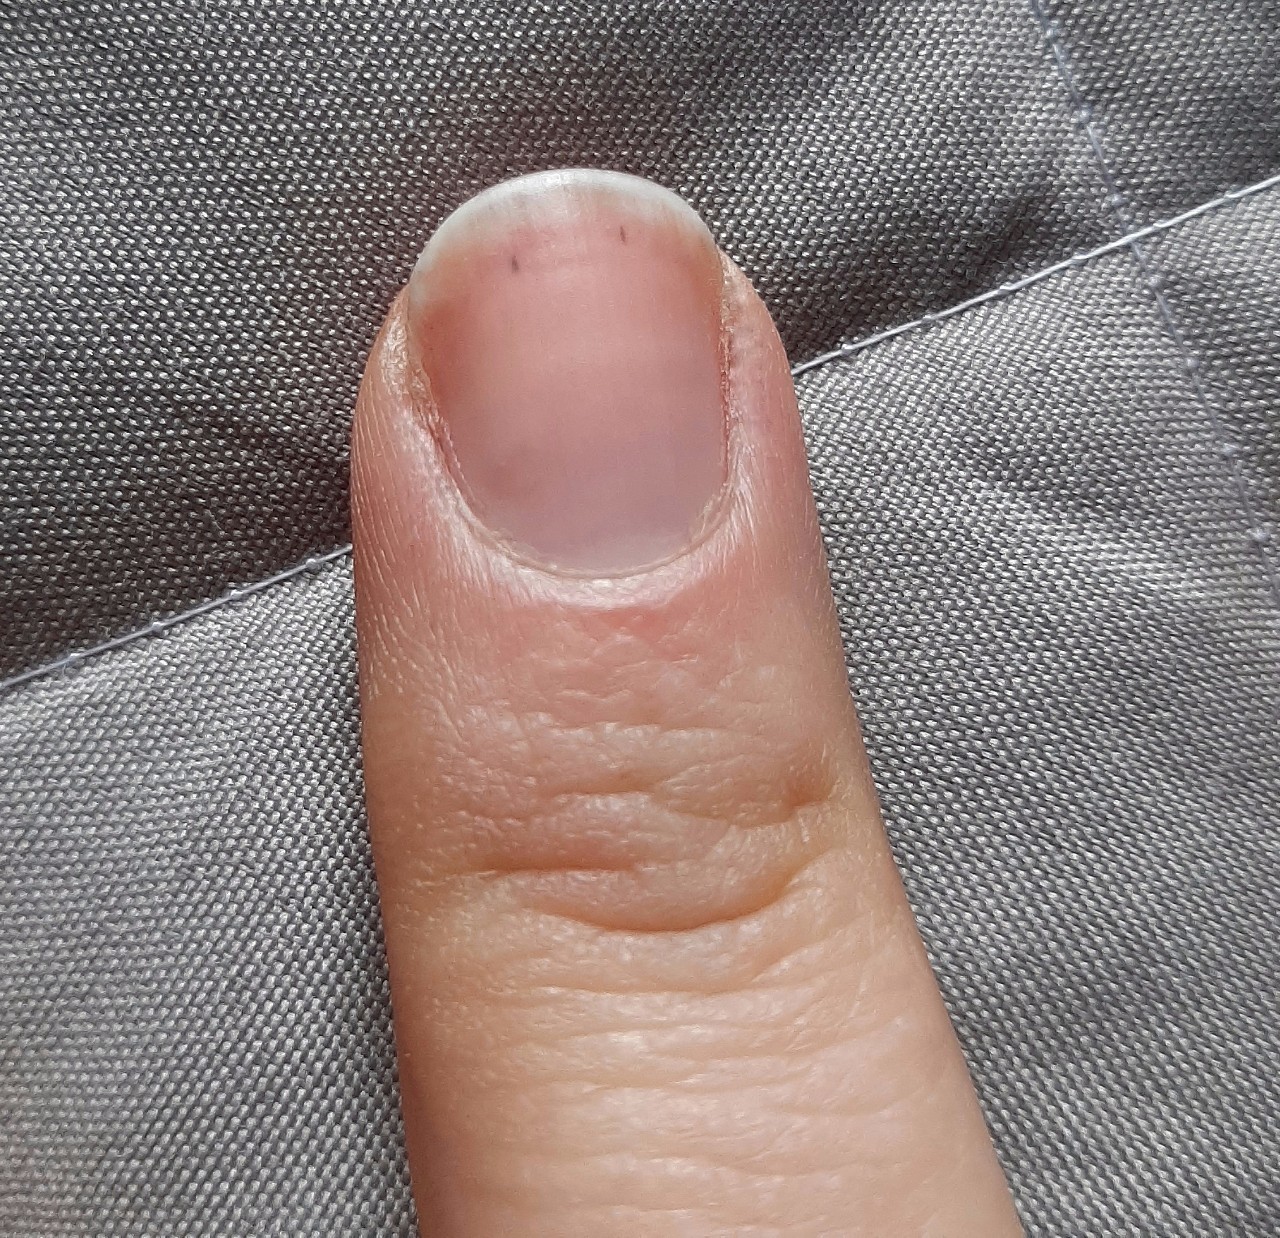  пятна на ногтях - Вопрос дерматологу - 03 Онлайн